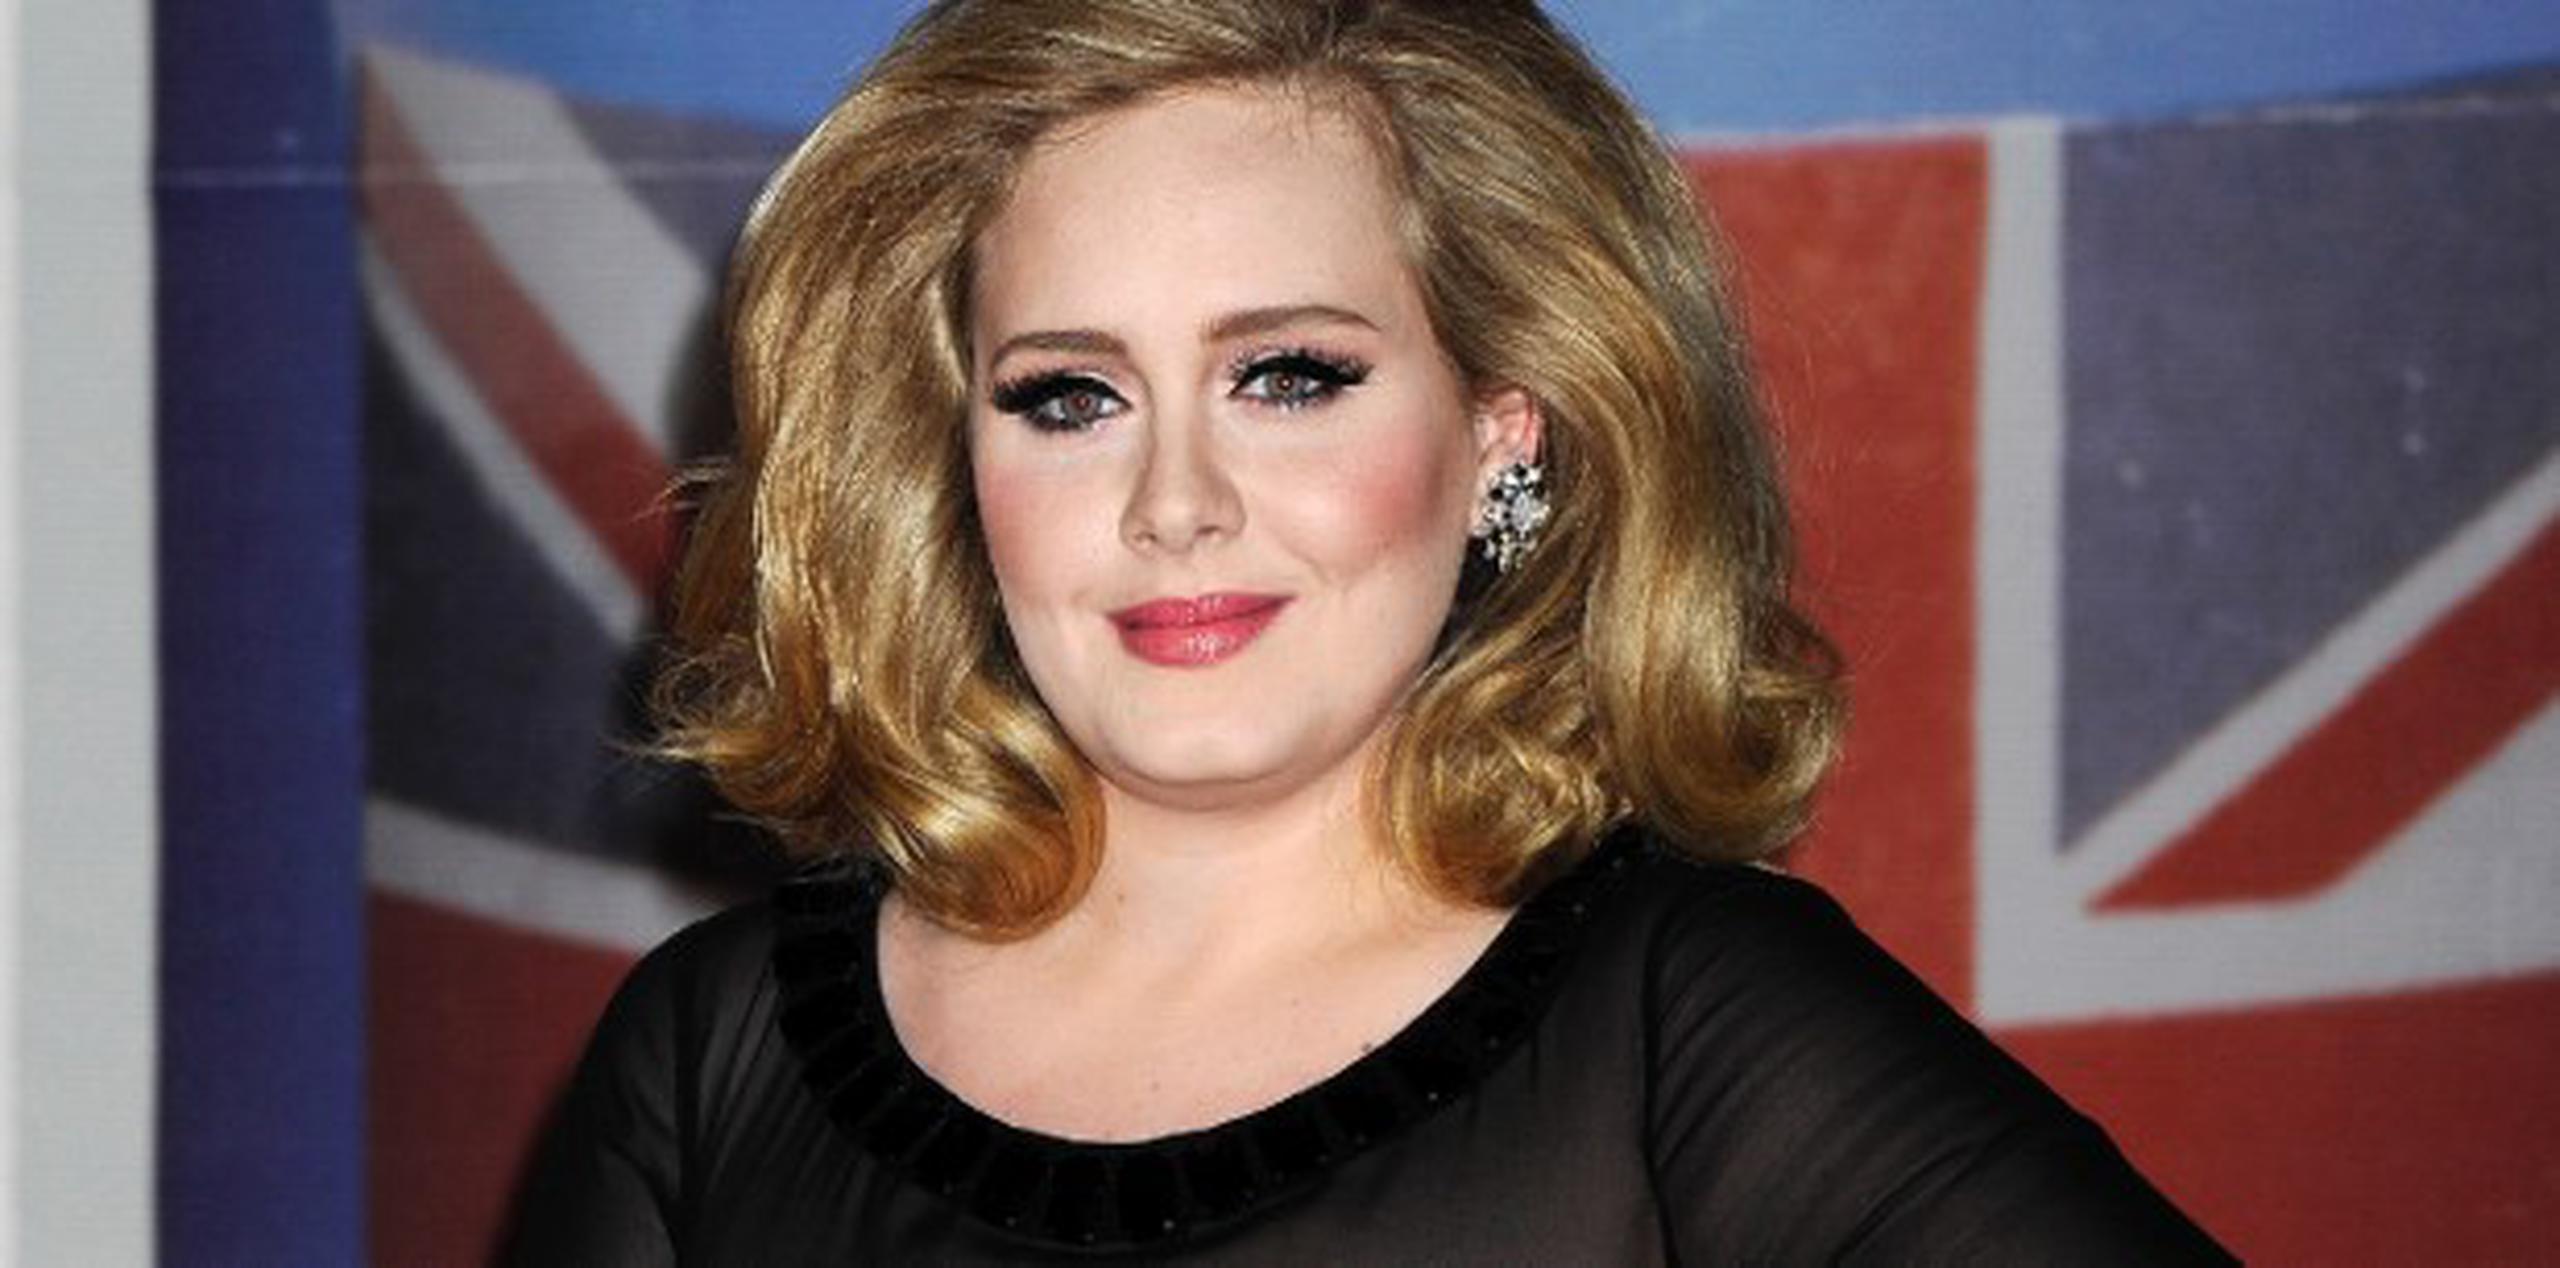 El primer disco de Adele vendió siete millones de copias en todo el globo y se colocó en el número uno de las listas de éxitos en el Reino Unido. (Archivo)